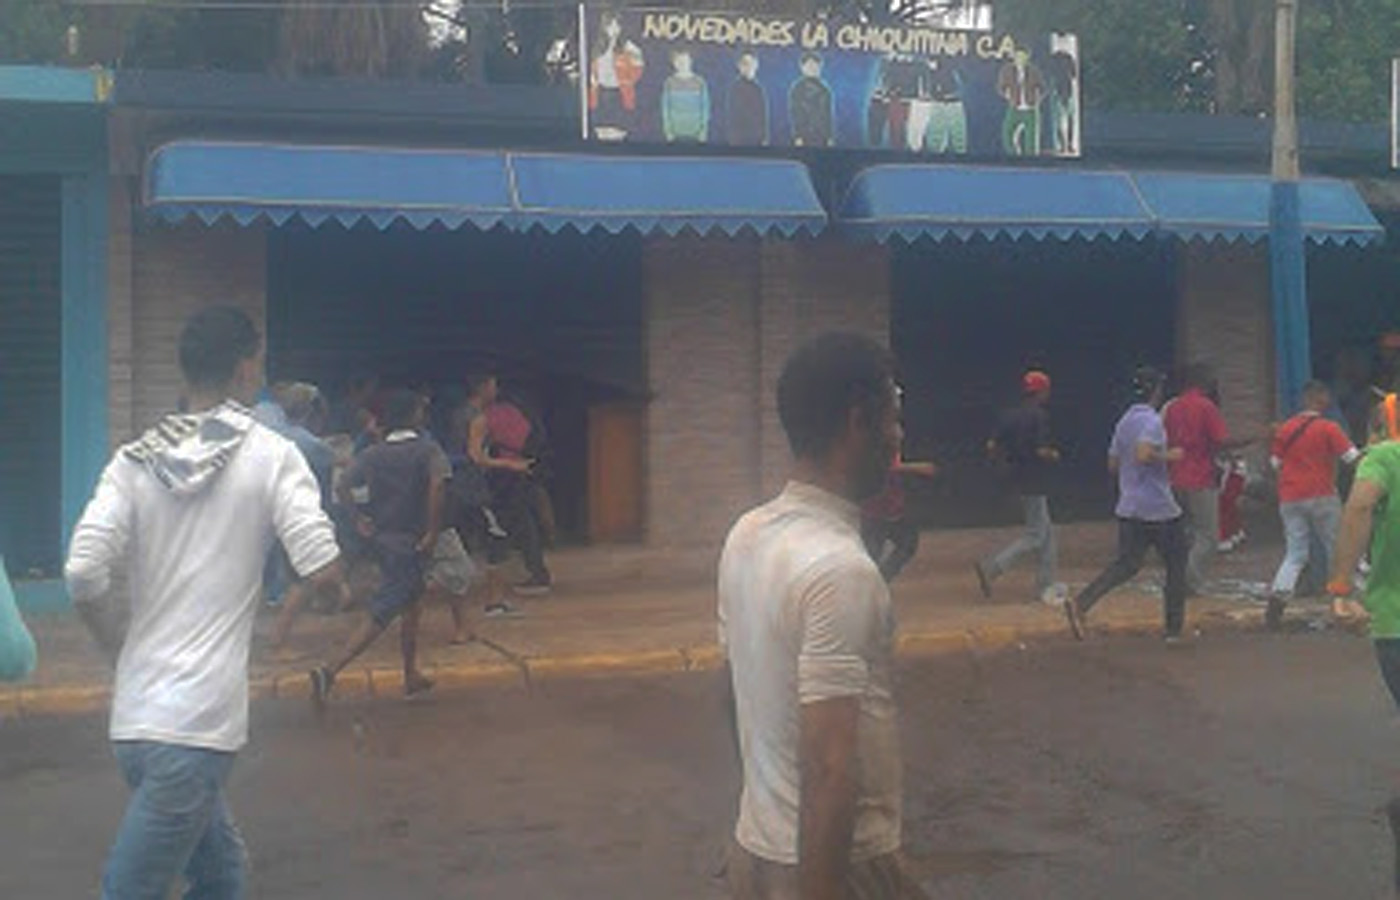 Tensa situación en Santa Elena de Uairén: Reportan robos a ... - La Patilla (Comunicado de prensa) (Registro)